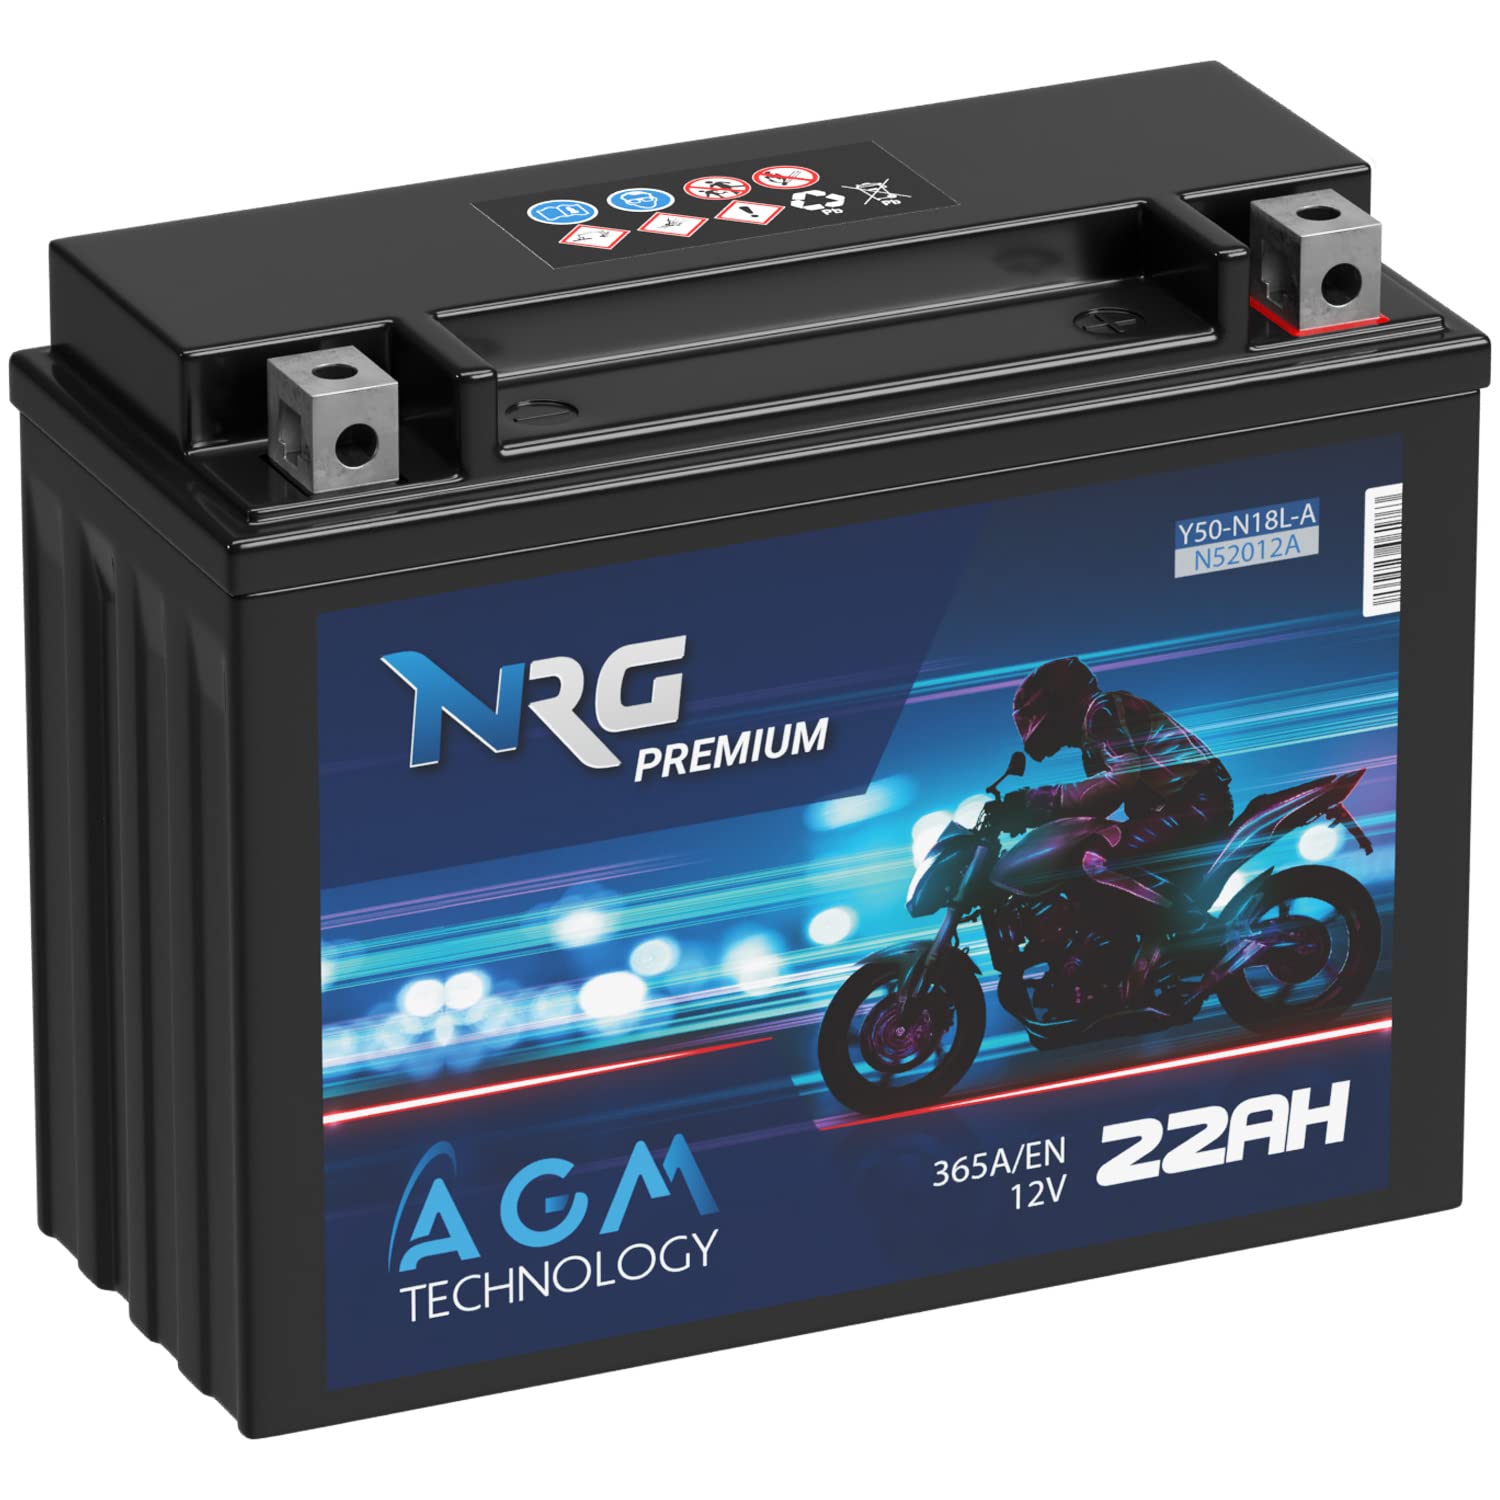 NRG Premium Y50-N18L-A AGM Motorradbatterie 22Ah 12V 365A/EN Batterie 52012 52016 C50-N18L-A Y50N18L-A2 auslaufsicher wartungsfrei ersetzt 20Ah 21Ah von NRG PREMIUM